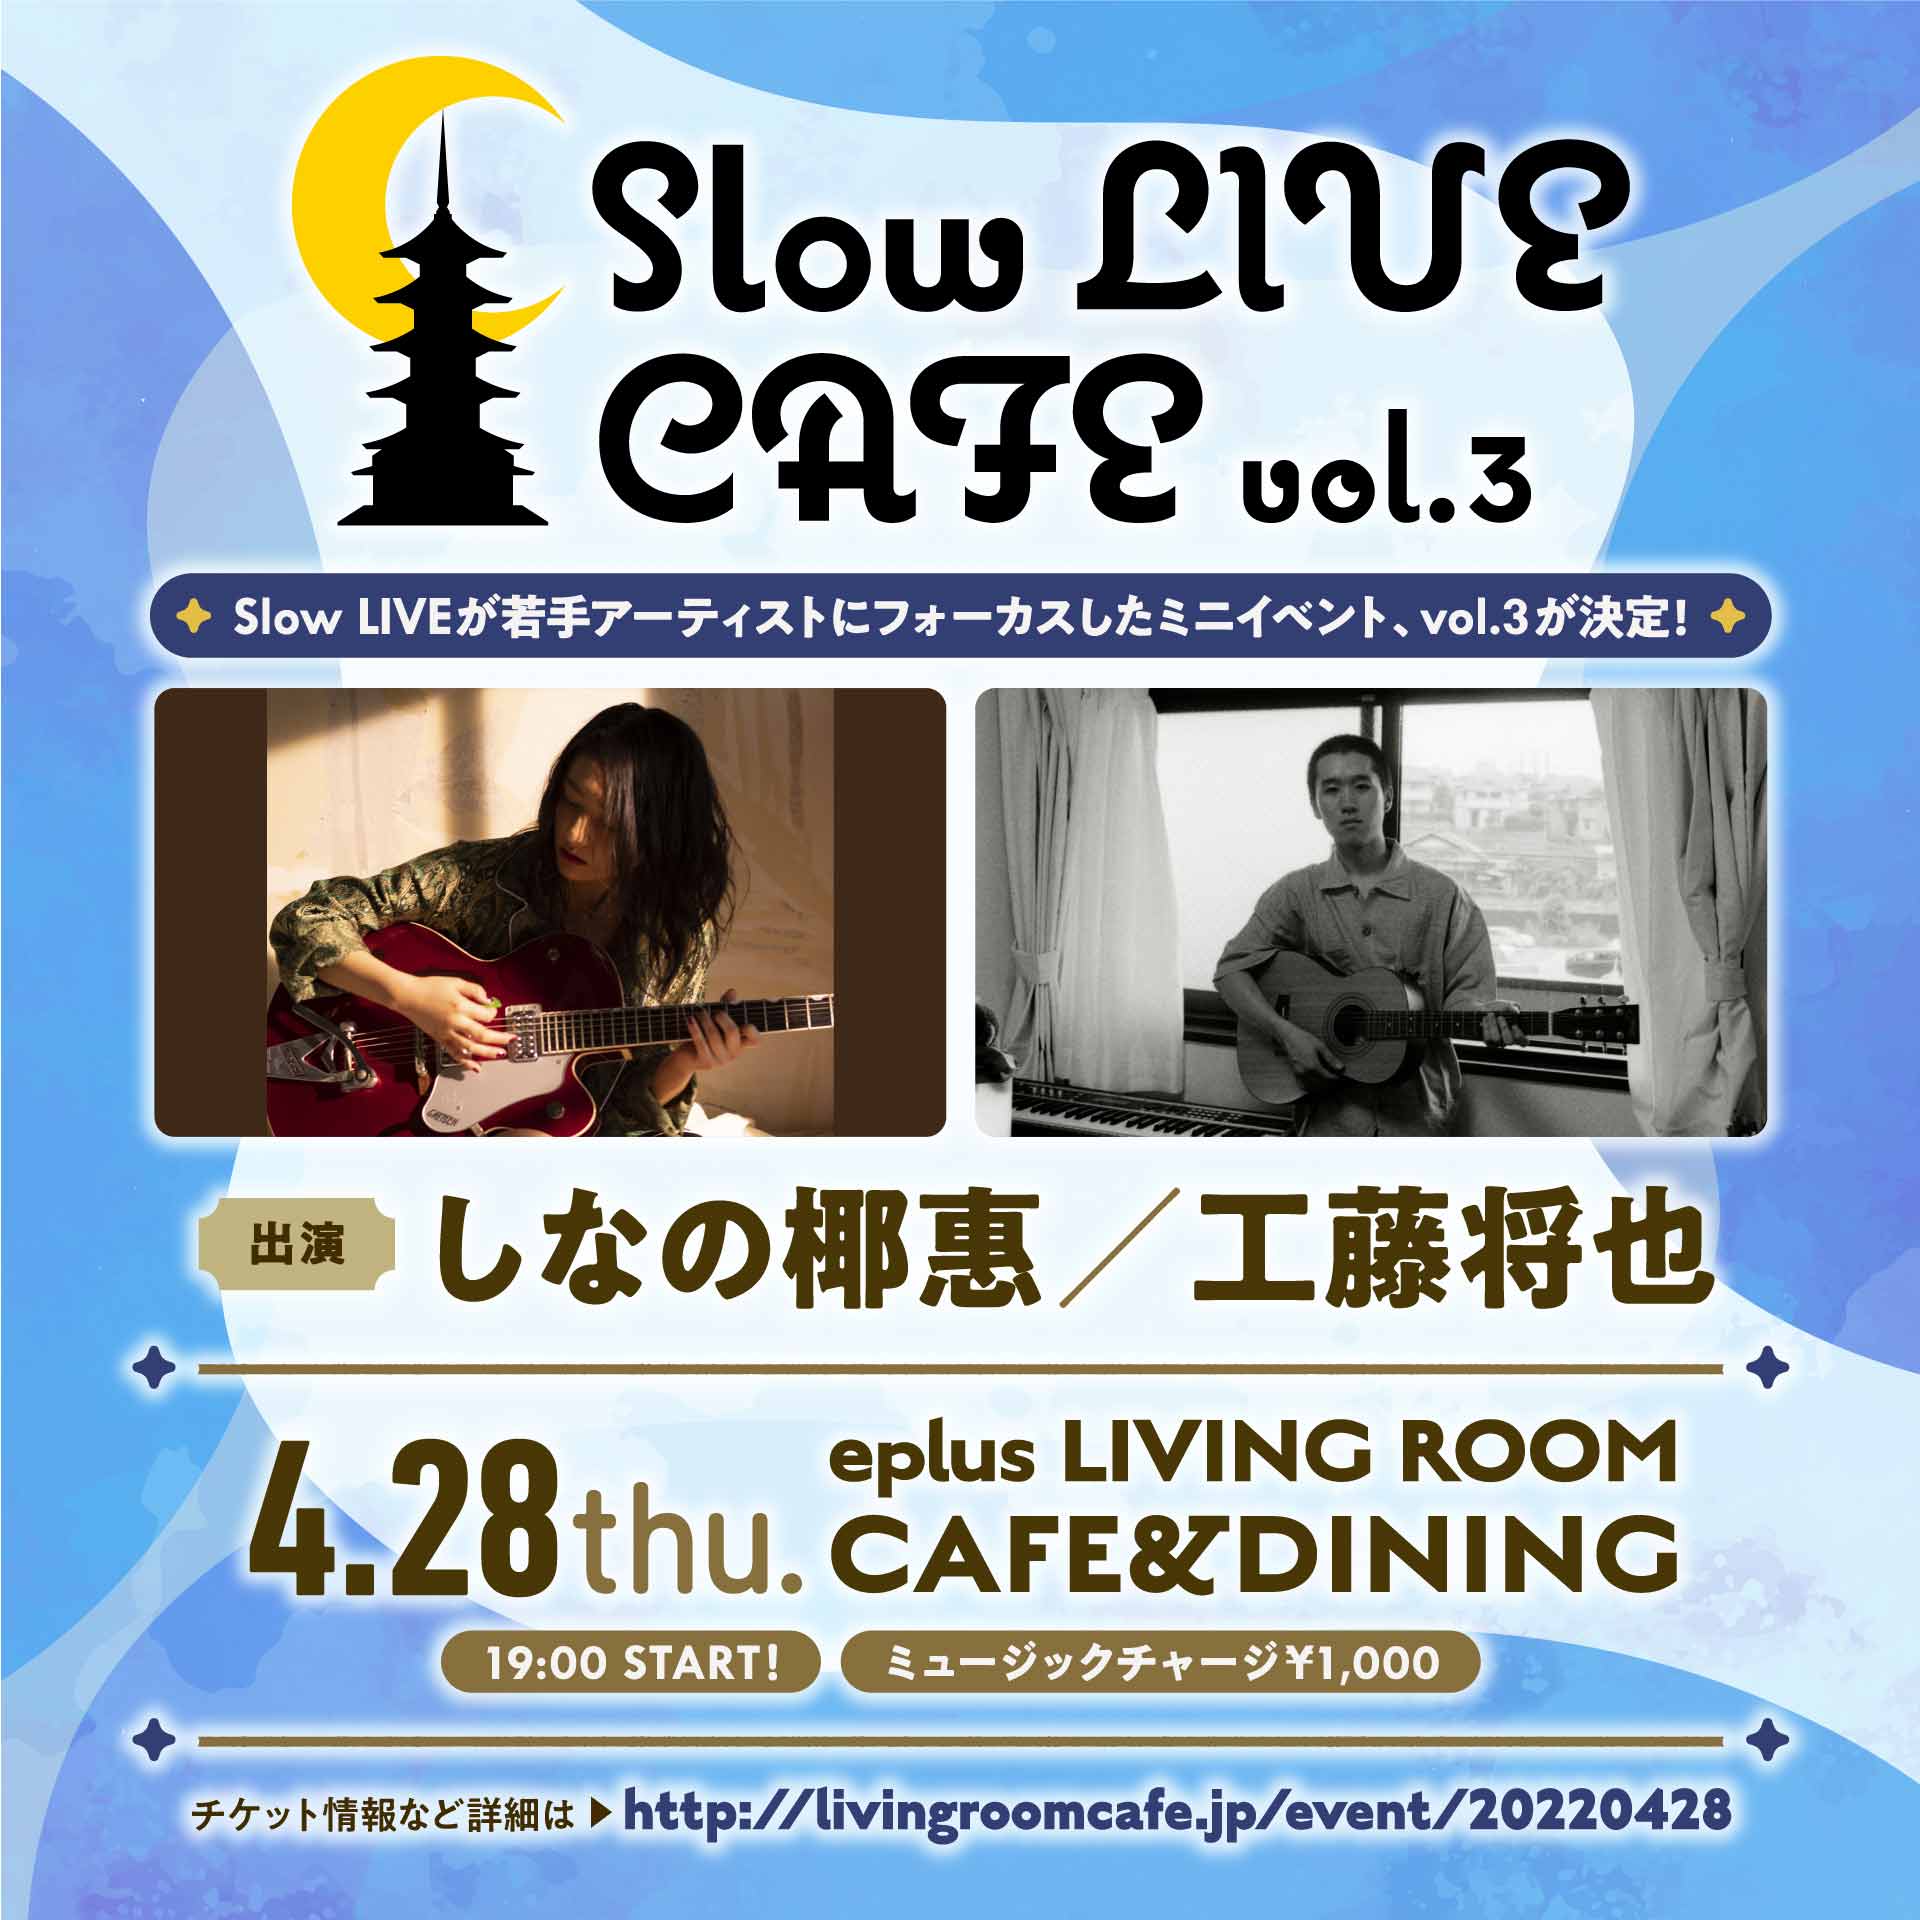 Slow LIVE CAFE vol.3